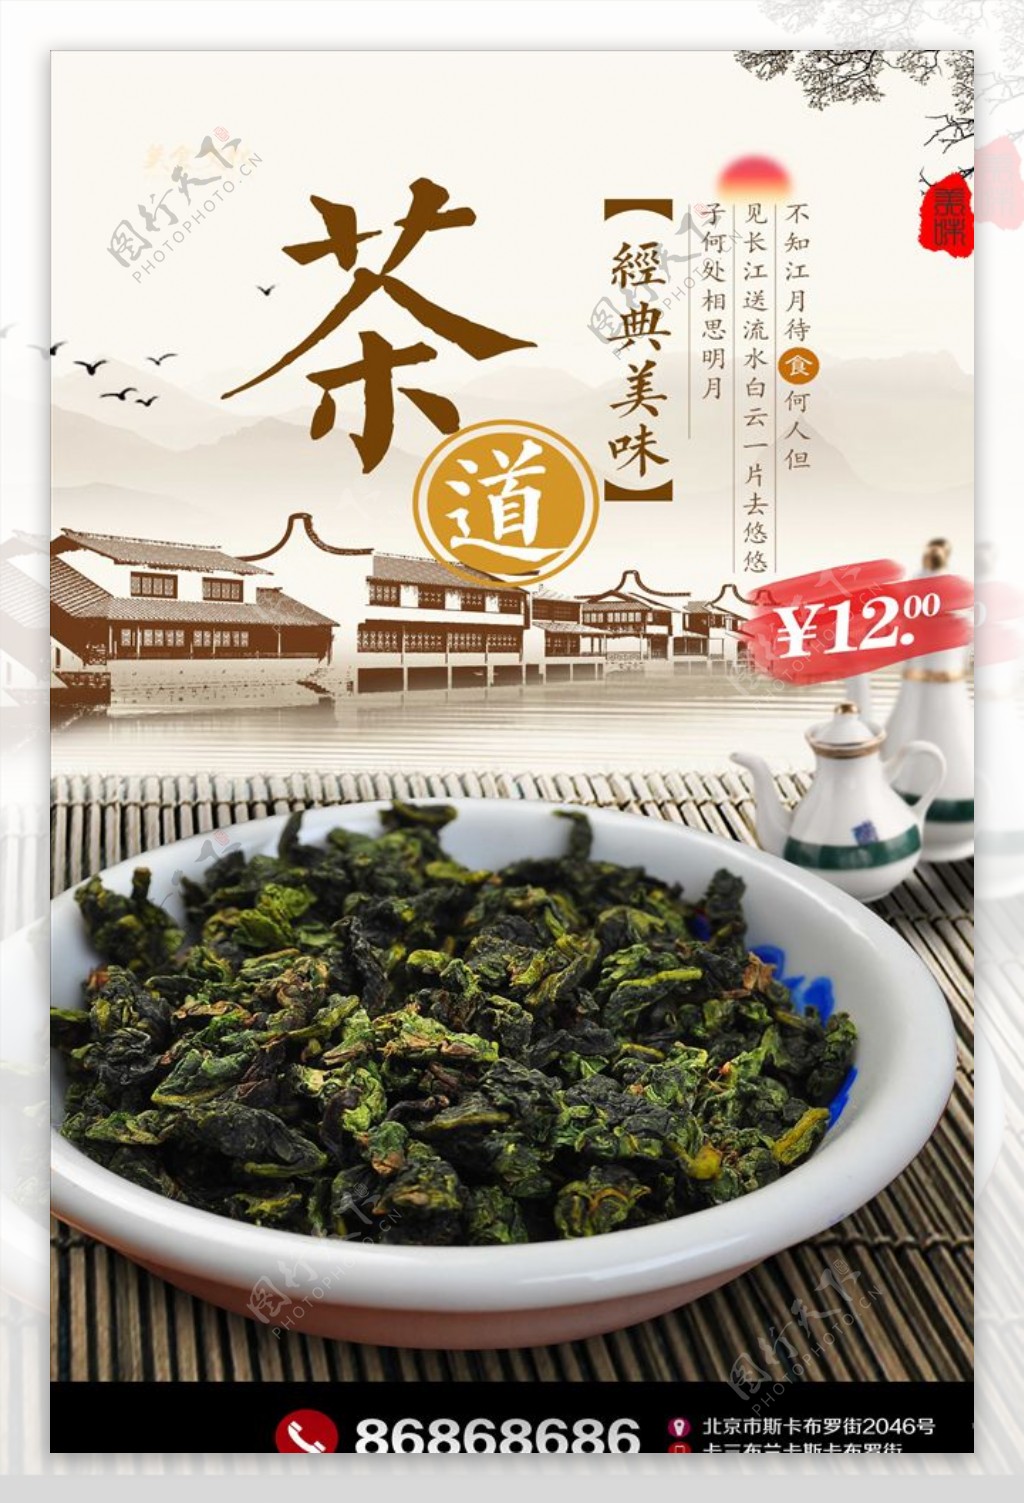 中国风茶文化海报设计模板